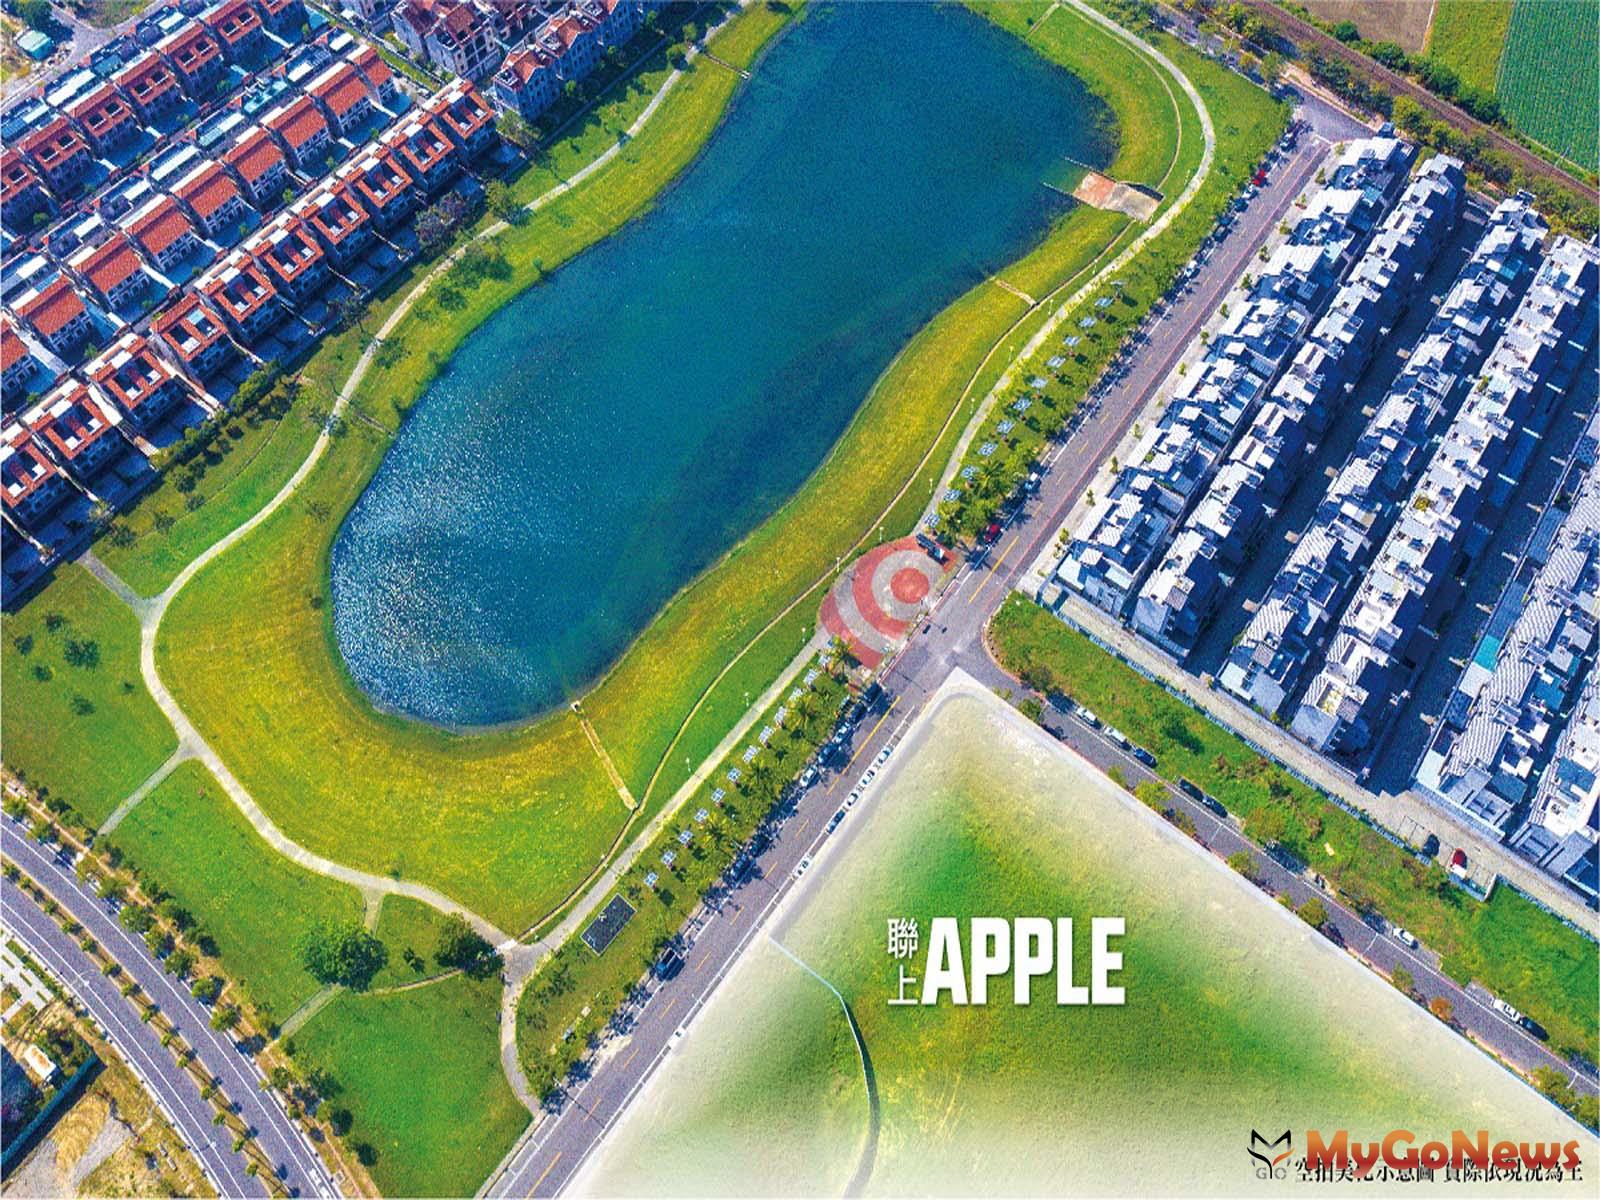 「聯上Apple」打造純住美式別墅聚落，基地緊鄰蓮潭公園與國小校園景觀。 MyGoNews房地產新聞 市場快訊